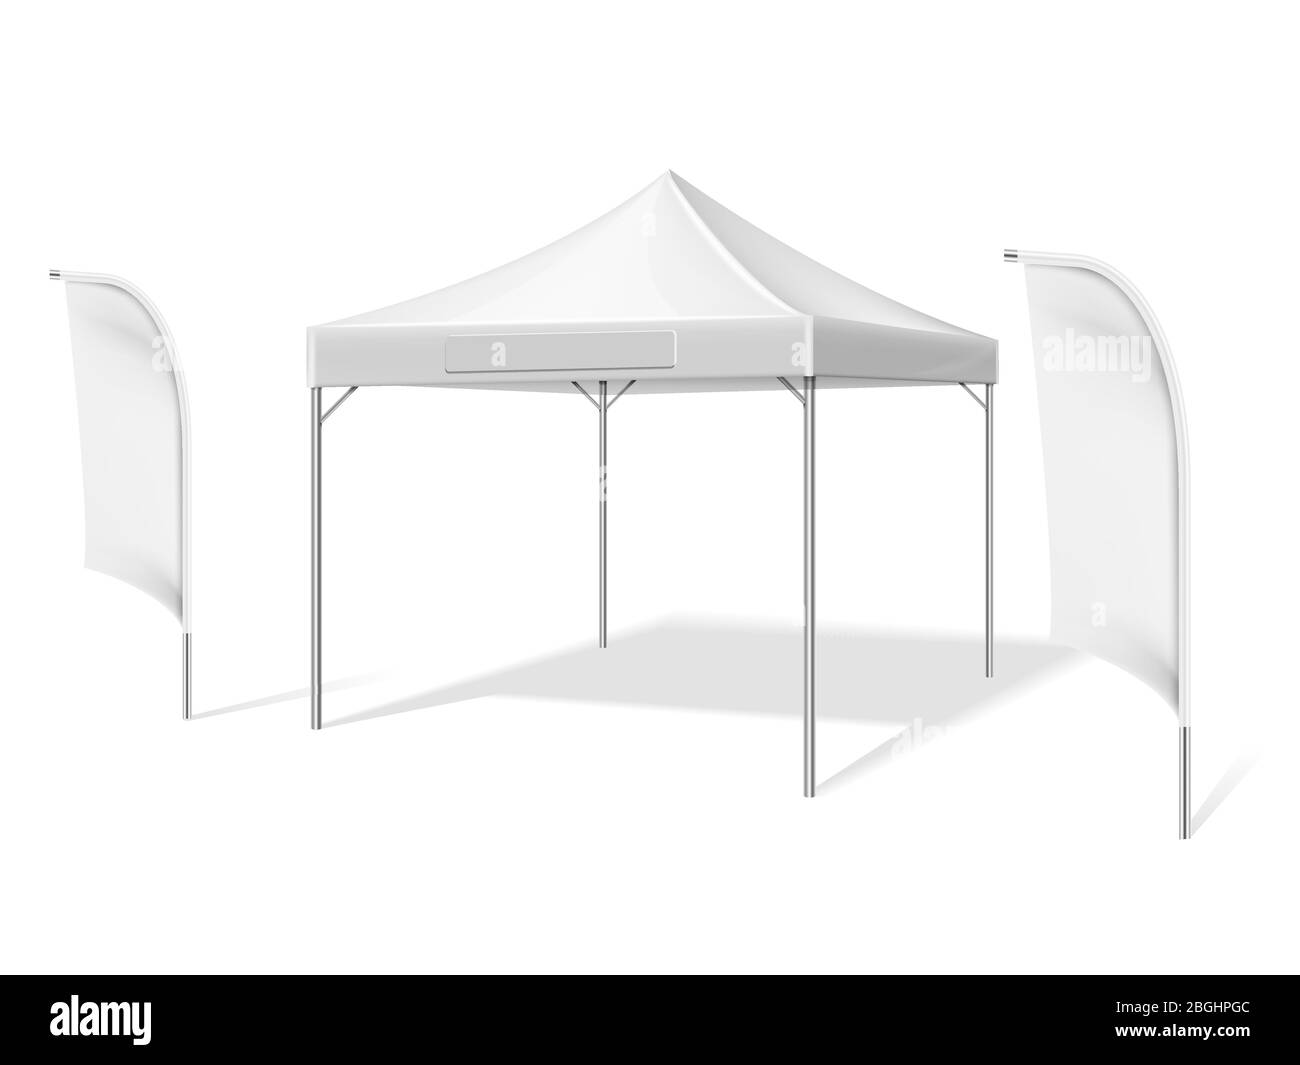 Leere weiße Outdoor-Event-Zelt mit fliegenden Strand Material Fahnen Vektor-Illustration isoliert auf weißem Hintergrund. Zelt faltbar, Zelt Schutz Mockup Stock Vektor